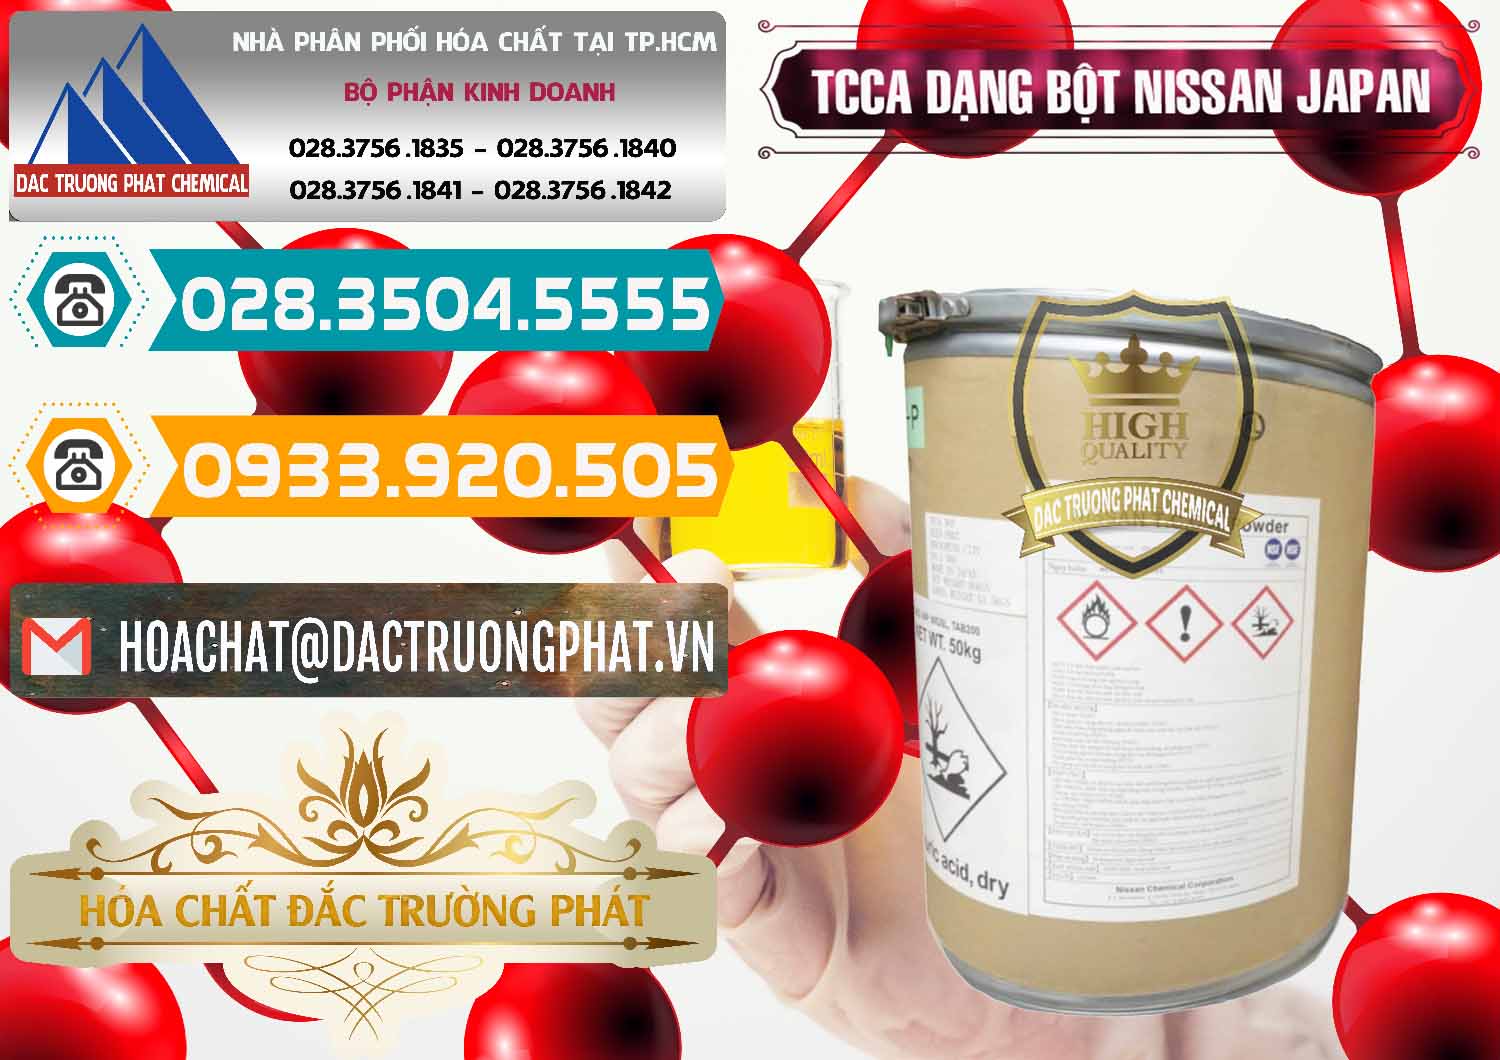 Chuyên bán _ phân phối TCCA - Acid Trichloroisocyanuric 90% Dạng Bột Nissan Nhật Bản Japan - 0375 - Chuyên cung cấp - kinh doanh hóa chất tại TP.HCM - congtyhoachat.vn